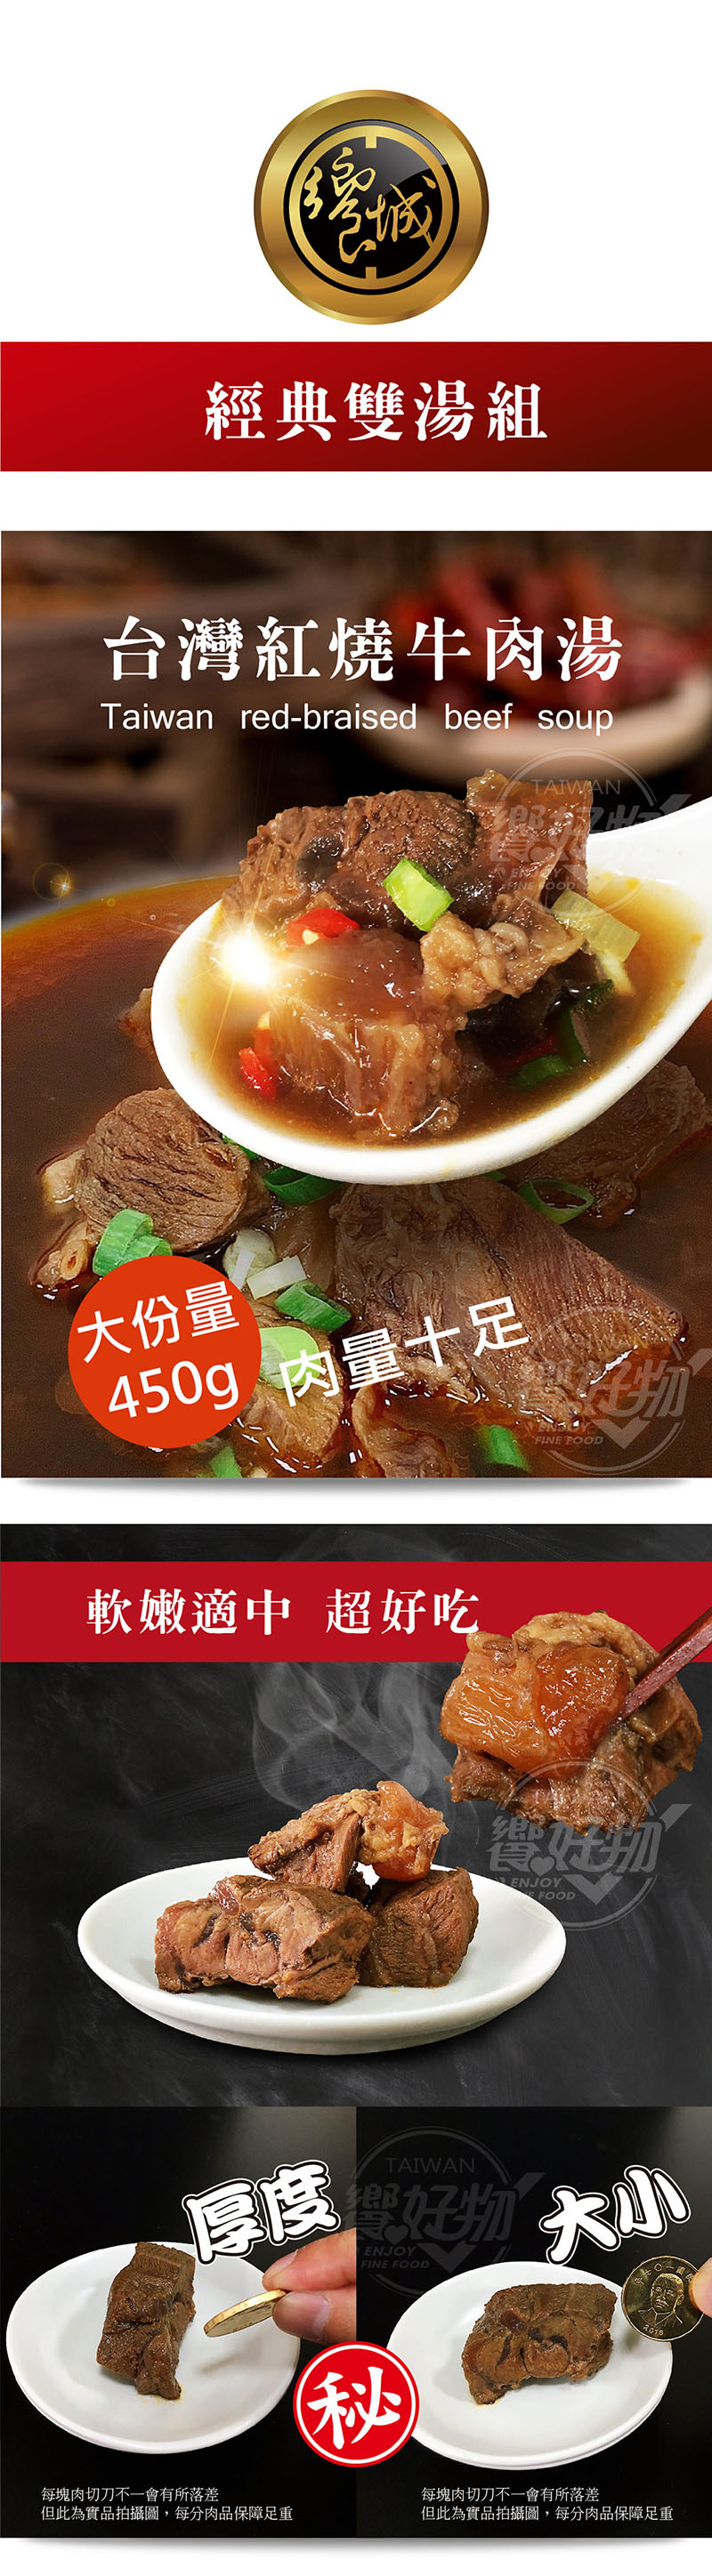 【饗城】紅燒牛肉湯/叻沙雞肉湯 團購美食 調理包 料理包 牛肉湯 熱銷經典湯品